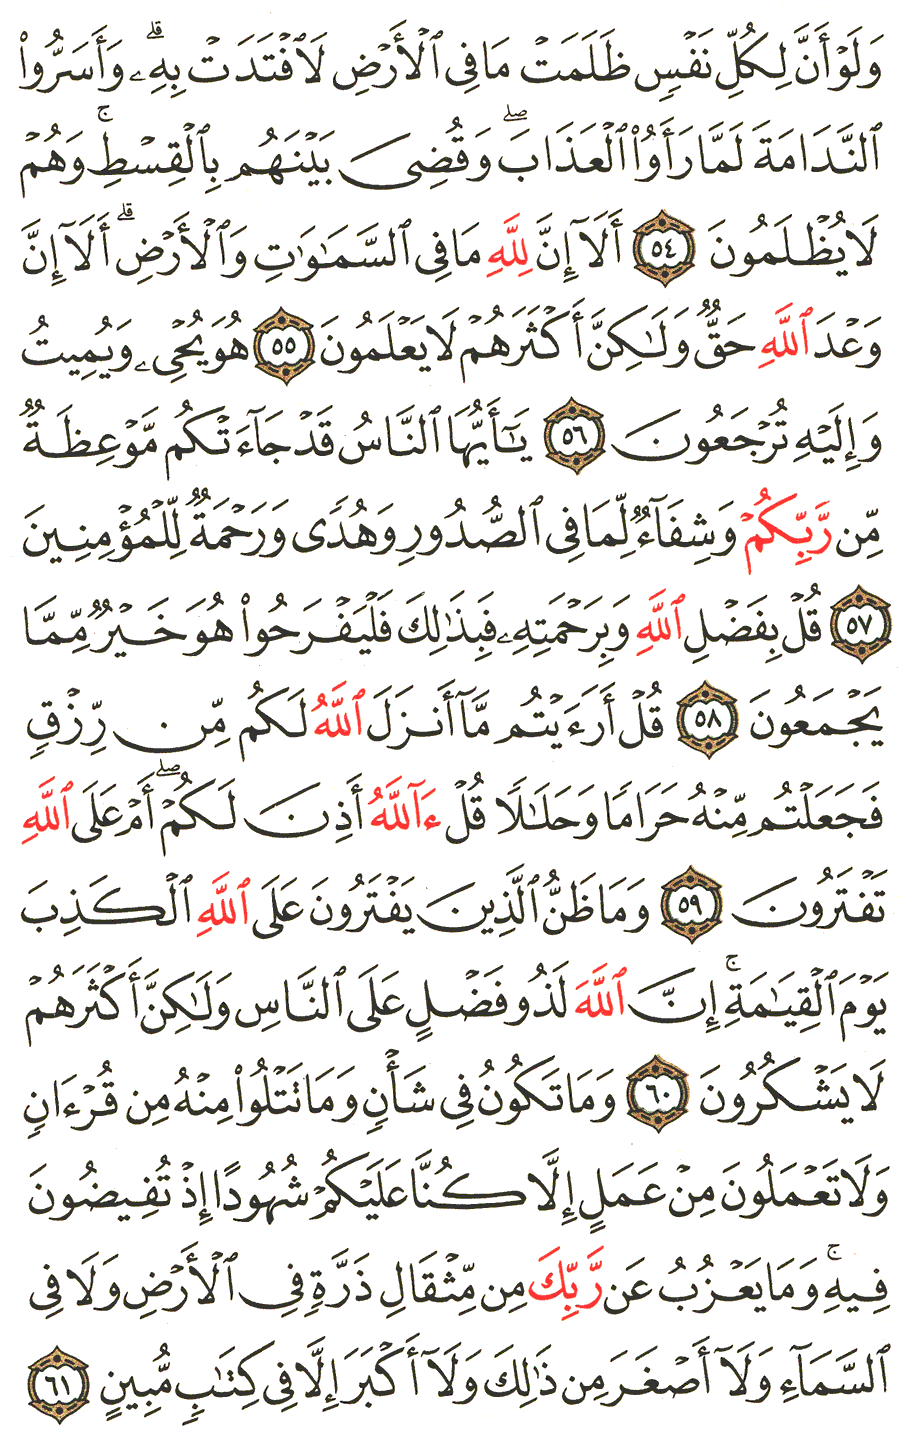 الصفحة رقم 215  من القرآن الكريم مكتوبة من المصحف